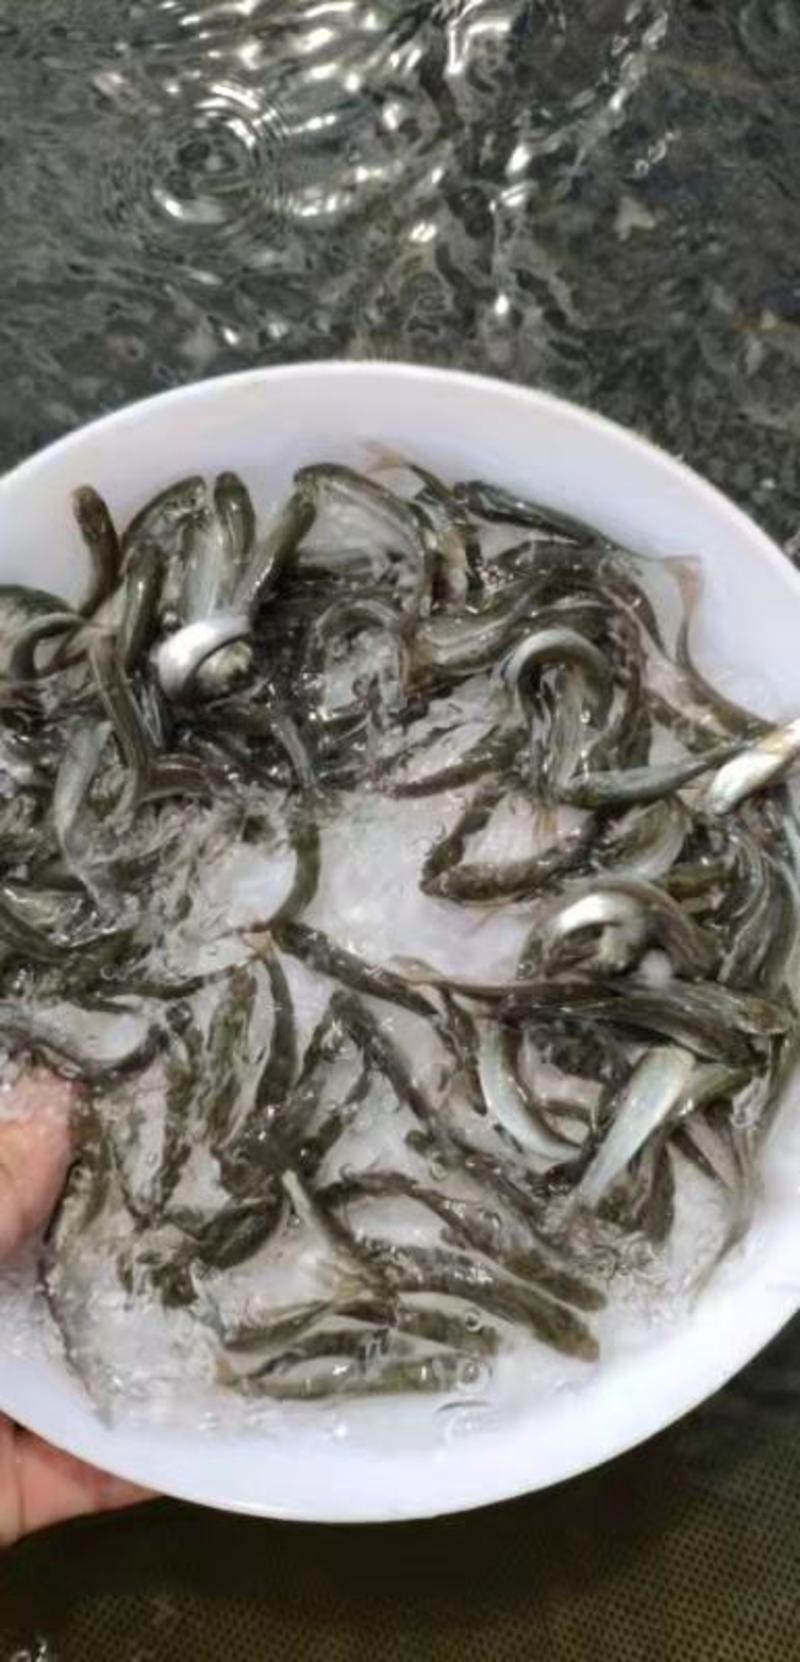 广东东莞麦鲮鱼高密度高产量高成活率